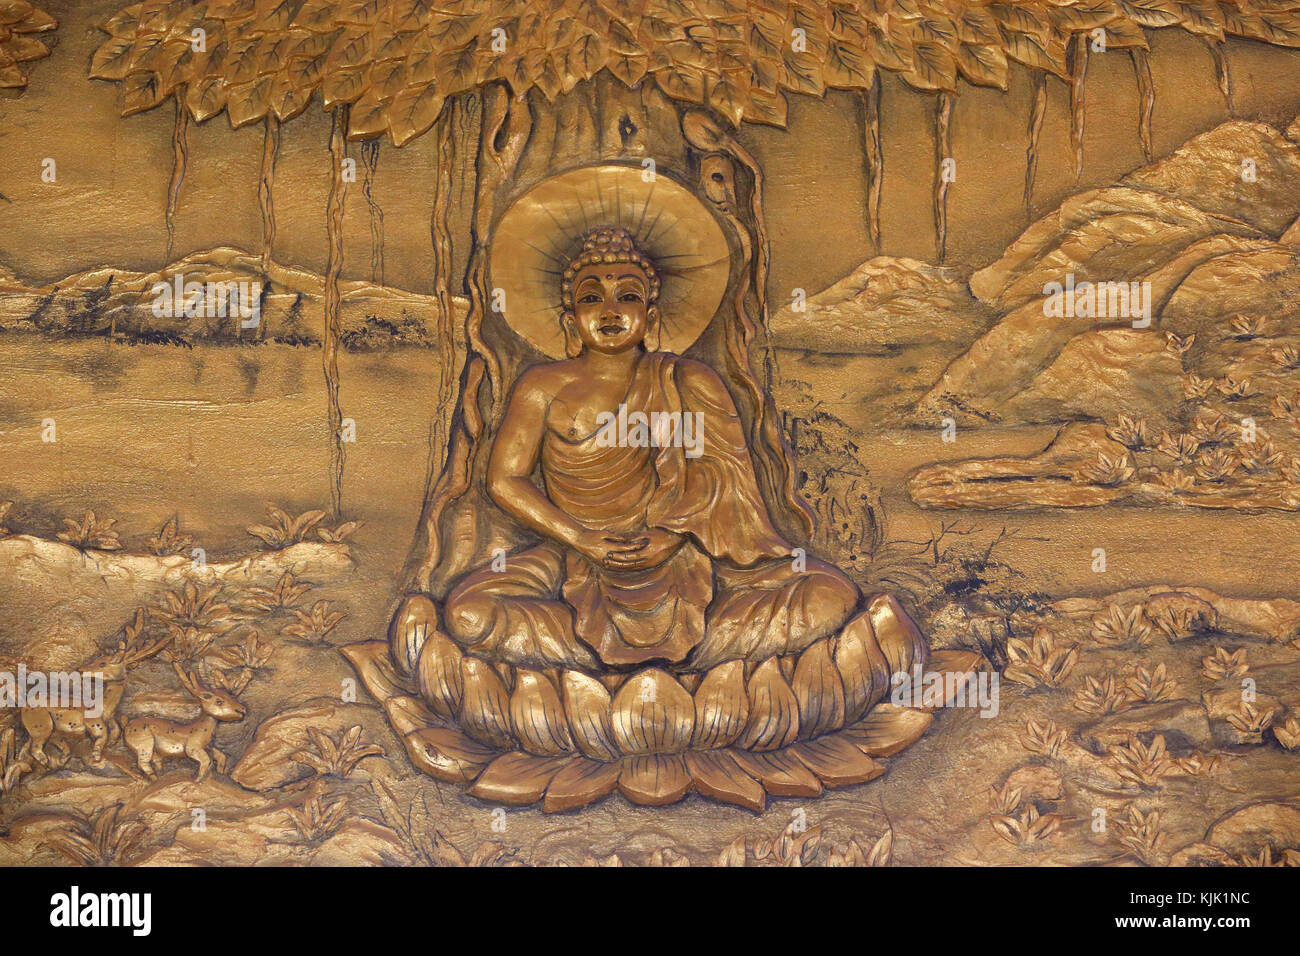 Chua Thiep lange buddhistische Pagode. Shakyamuni Buddha in der Meditation sitzen darstellen. Thay Ninh. Vietnam. Stockfoto